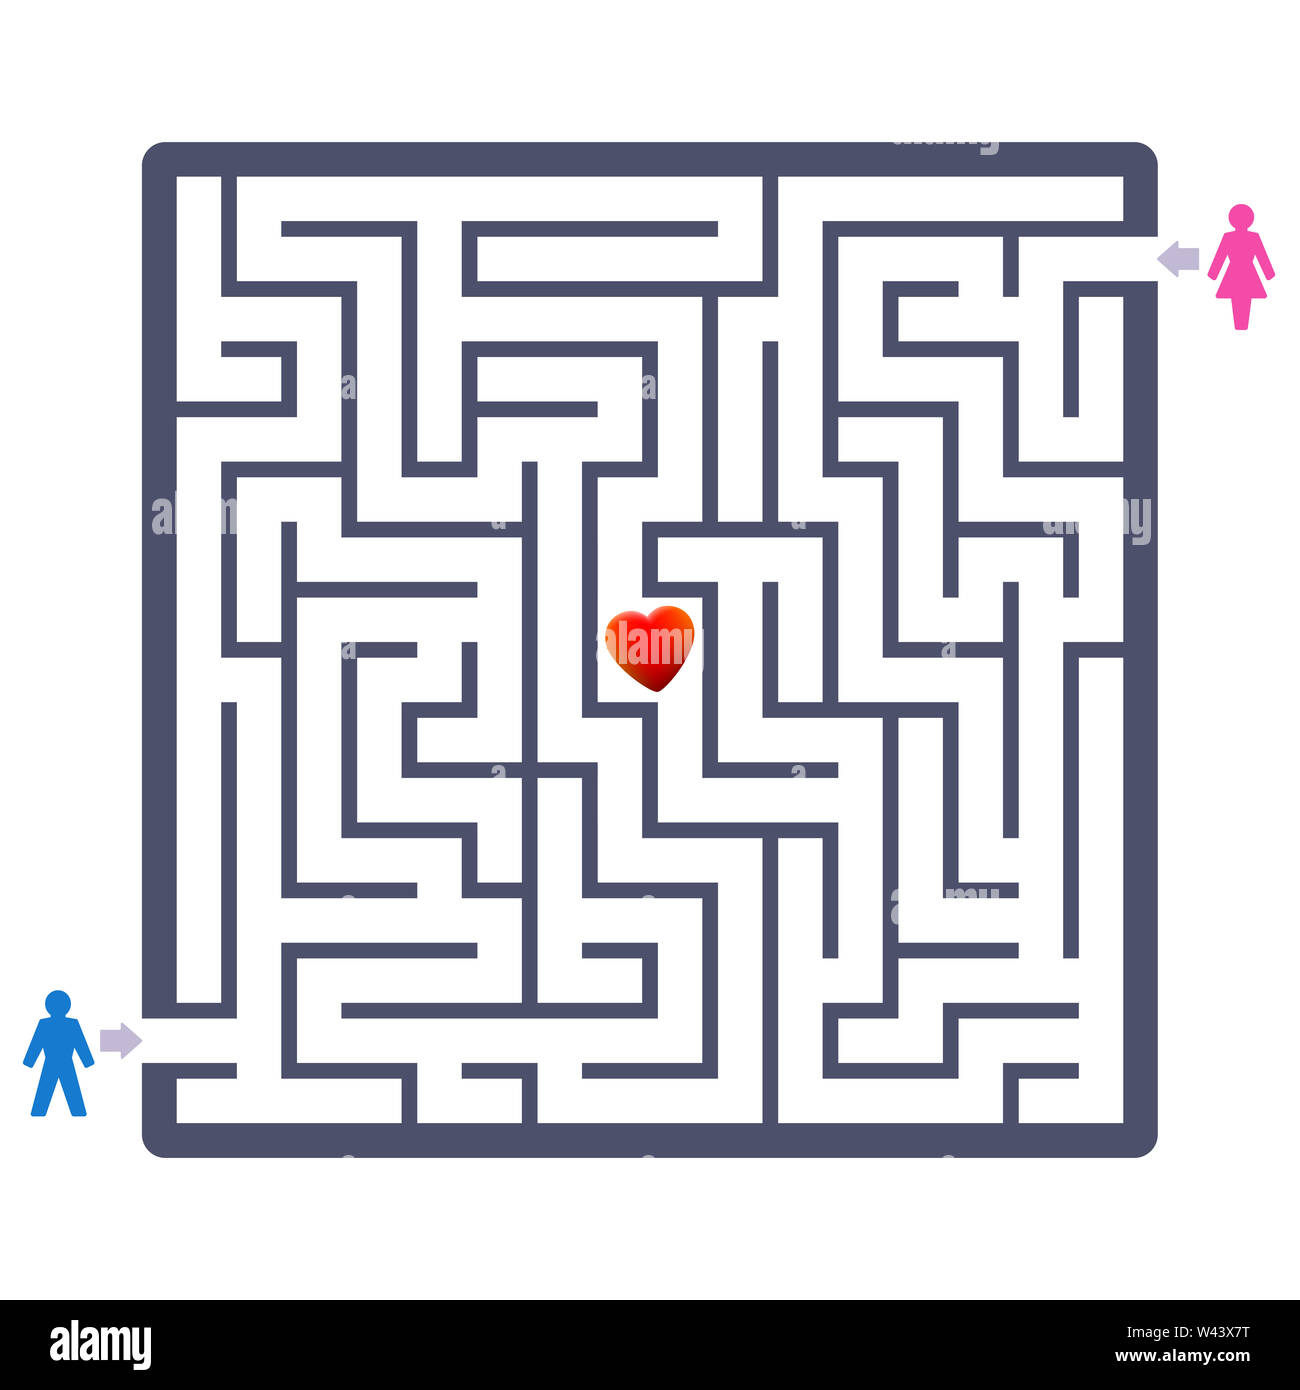 Love couple labyrinthe avec coeur dans le centre. Trouver votre partenaire jeu amusant - et un agent thérapeutique symbolique concernant la recherche de partenaires ou partenaires Banque D'Images